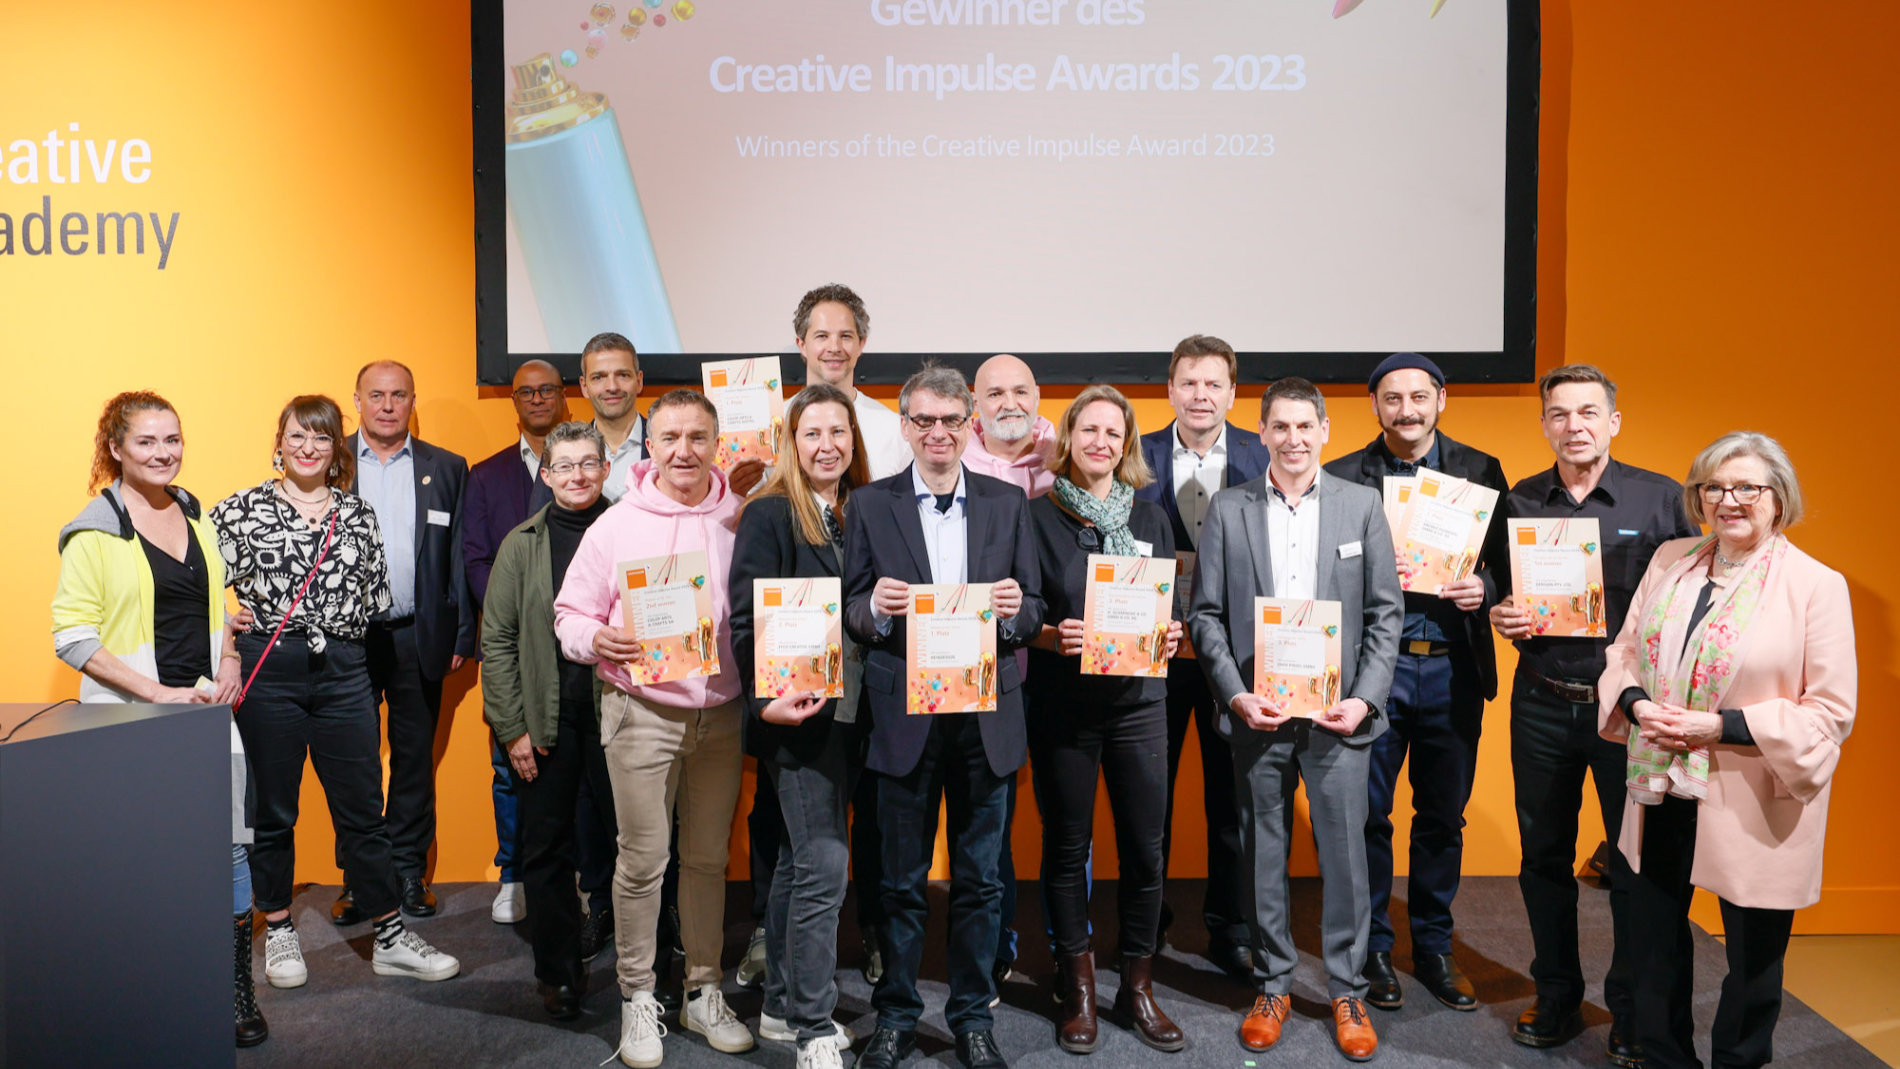 Gewinner des Creative Impulse Awards 2023. Bild: Messe Frankfurt/Jean-Luc Valentin